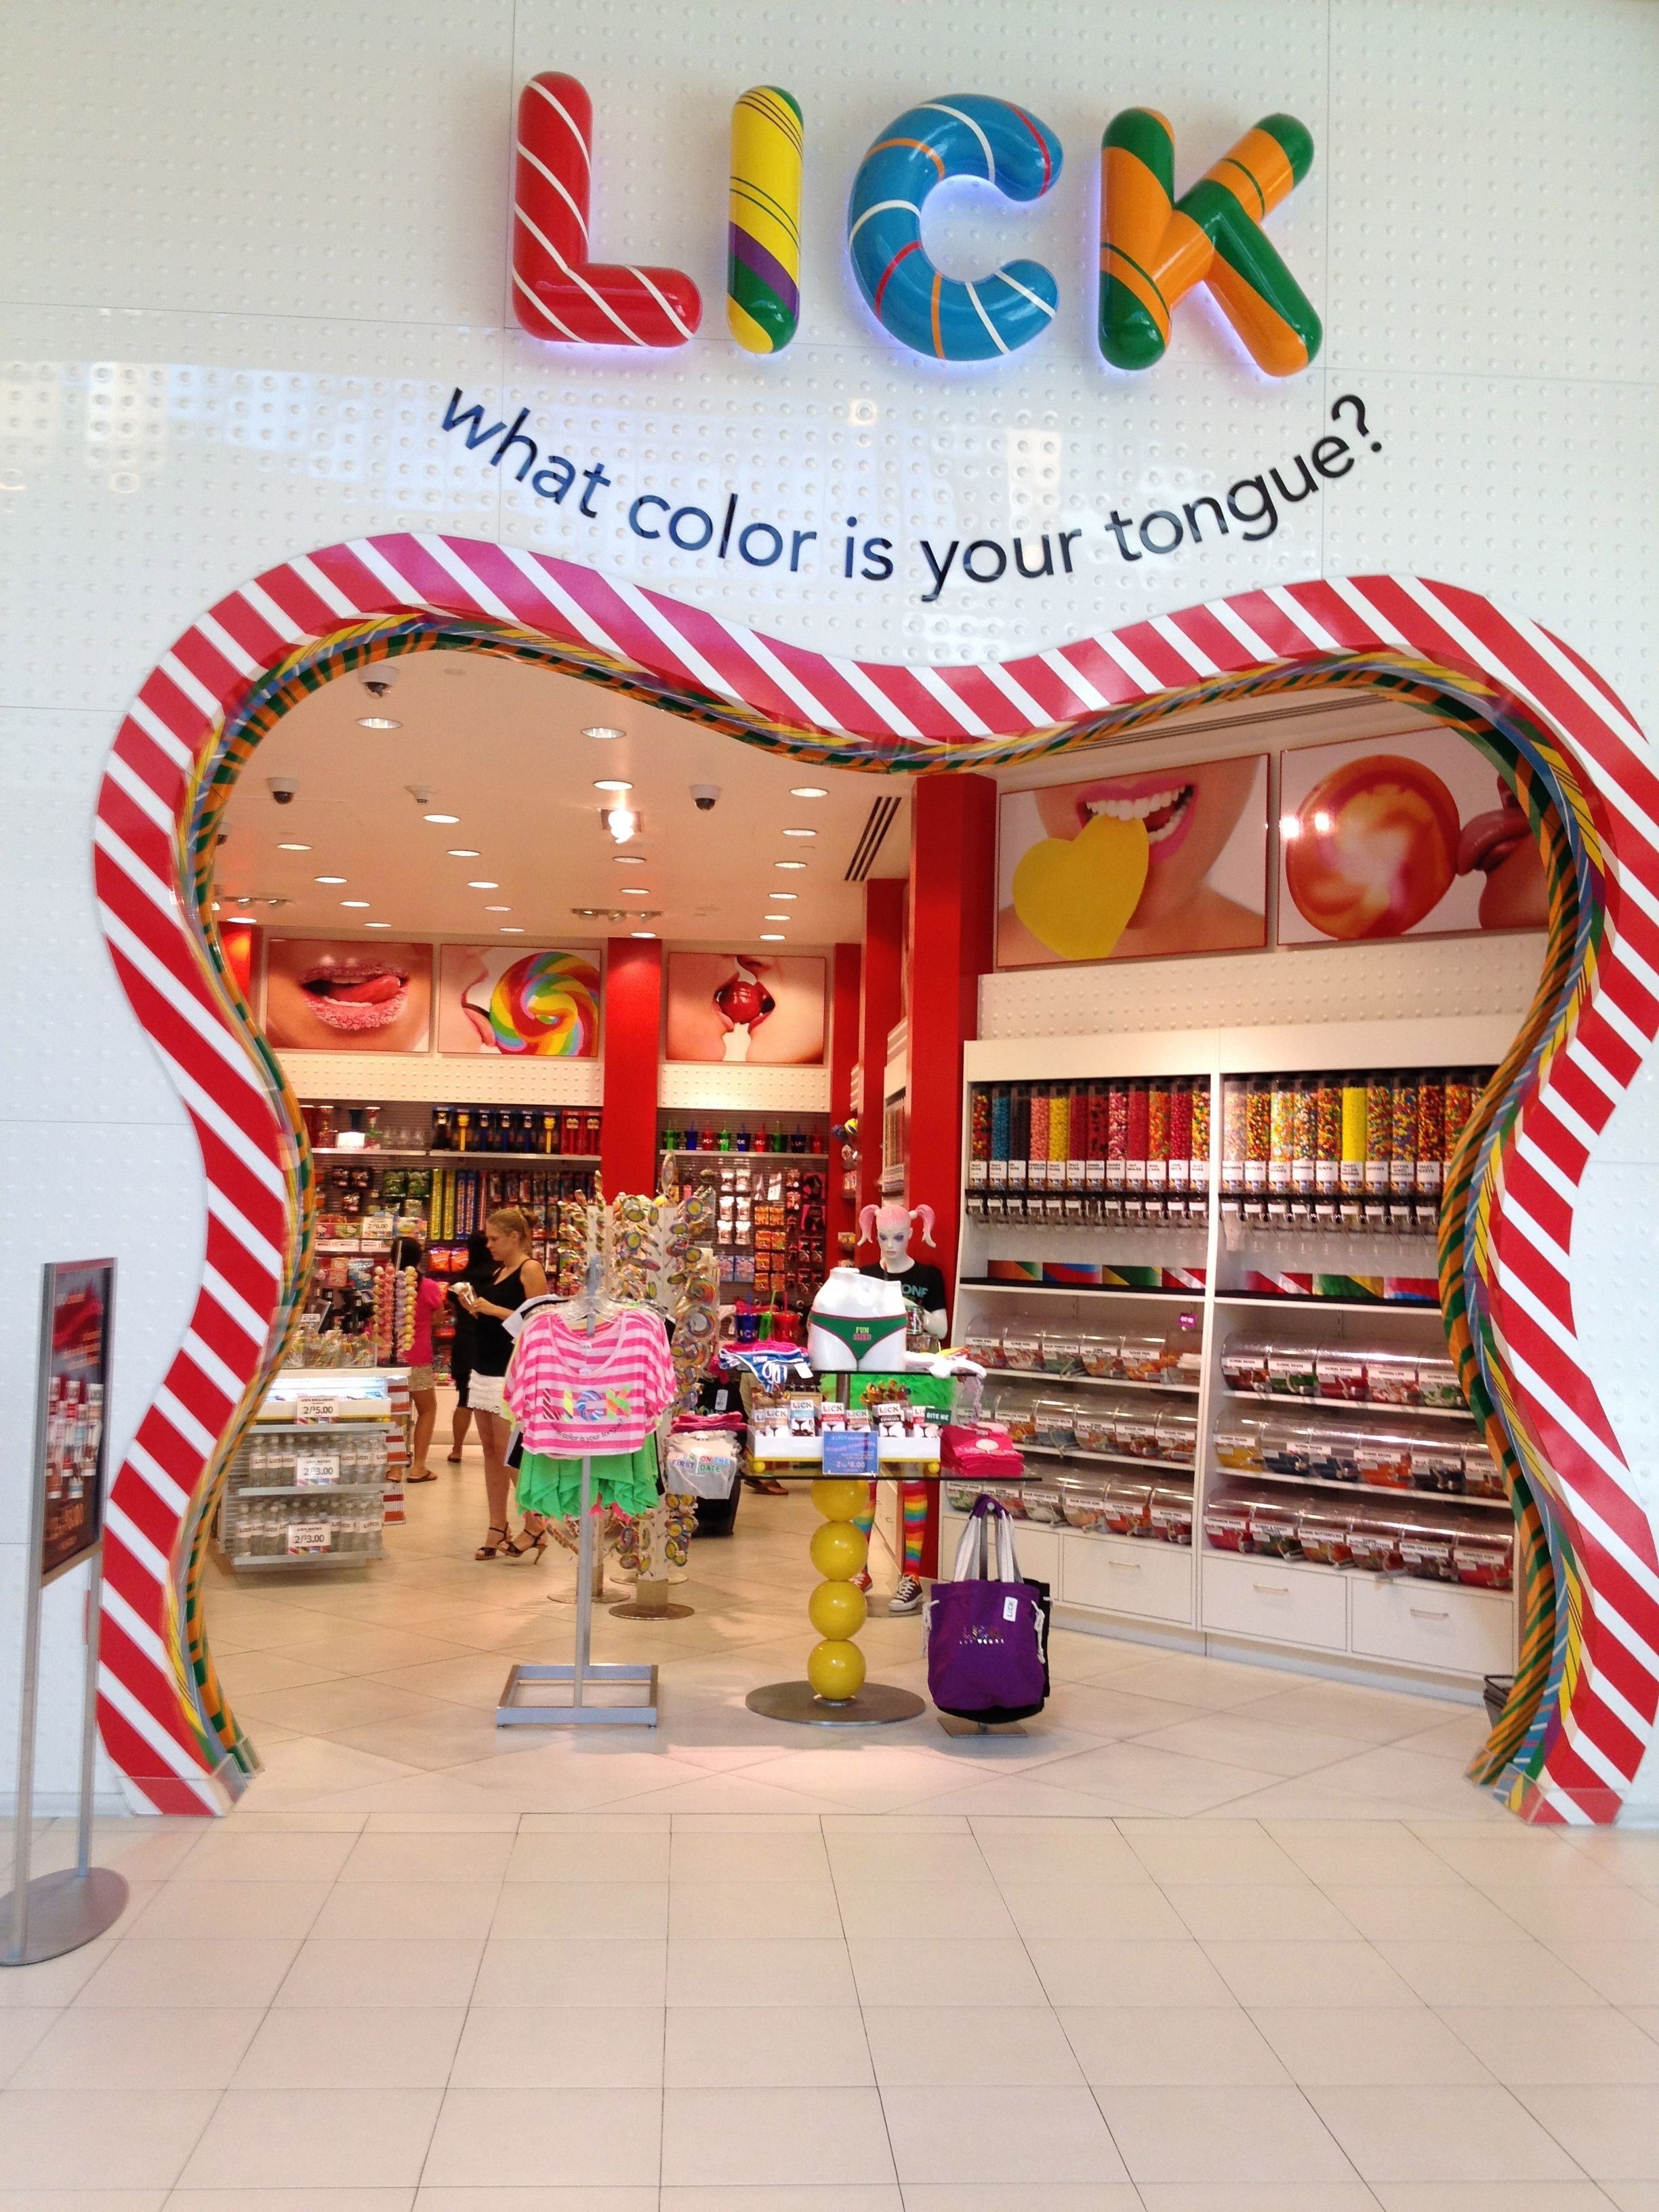 Candy shop junior charles. Candy shop магазин сладостей. Конфетный магазин. Магазин необычных сладостей. Название для магазина сладостей.